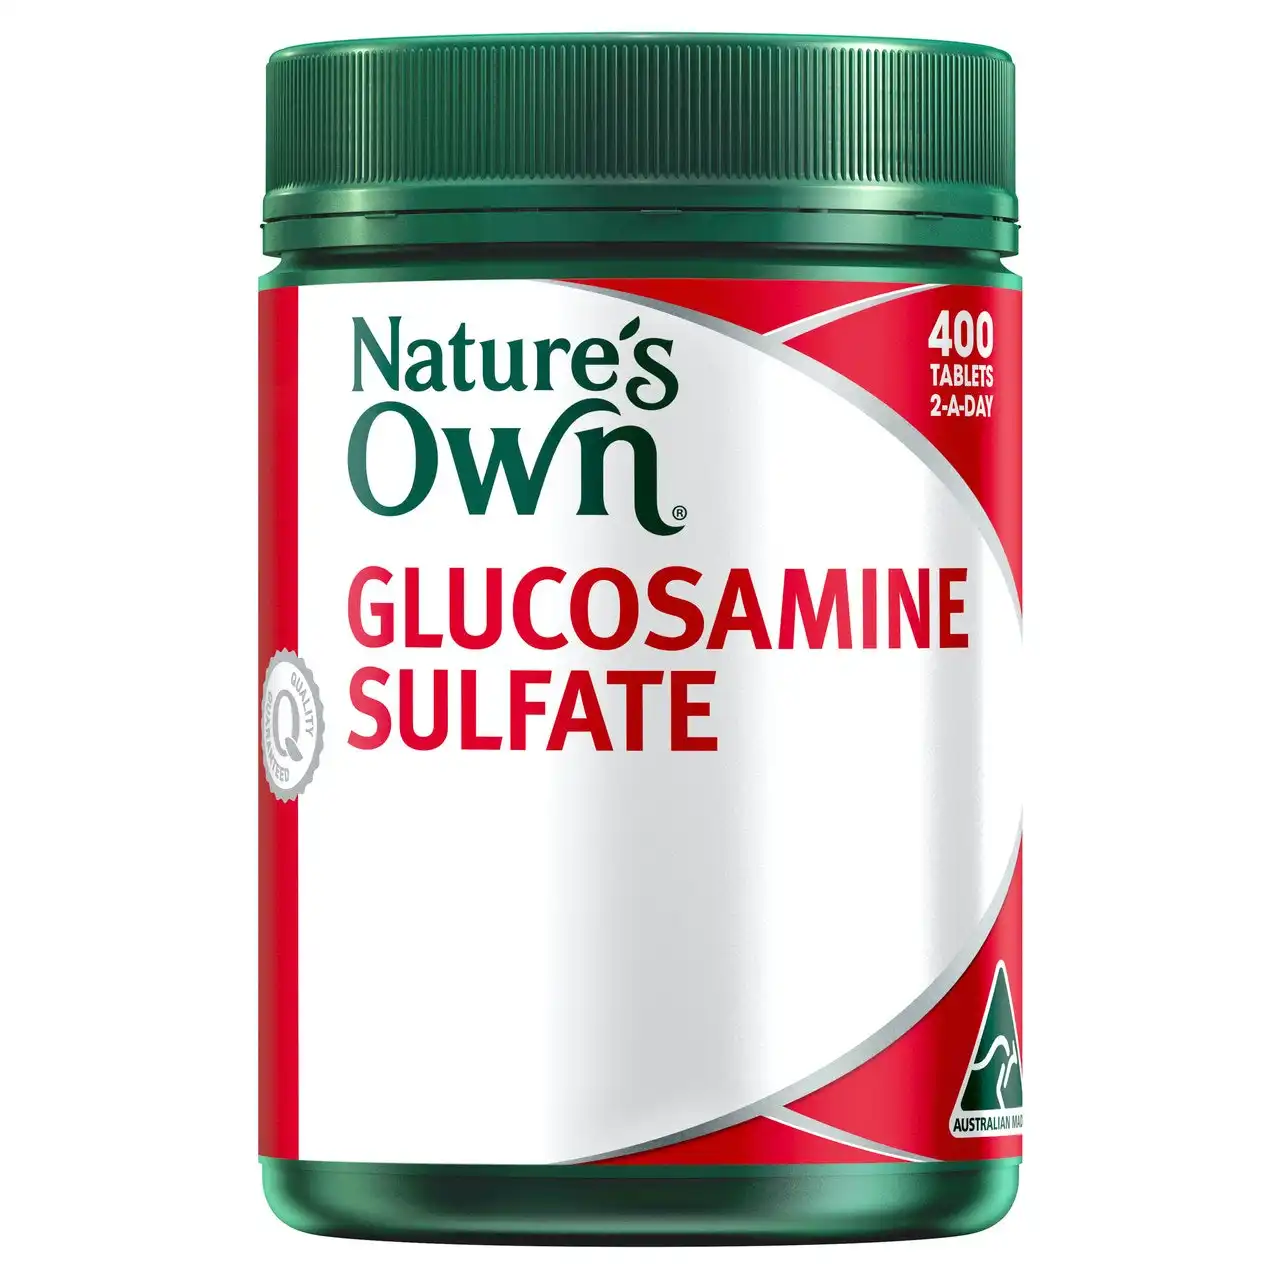 Nature's Own Glucosamine Sulfate